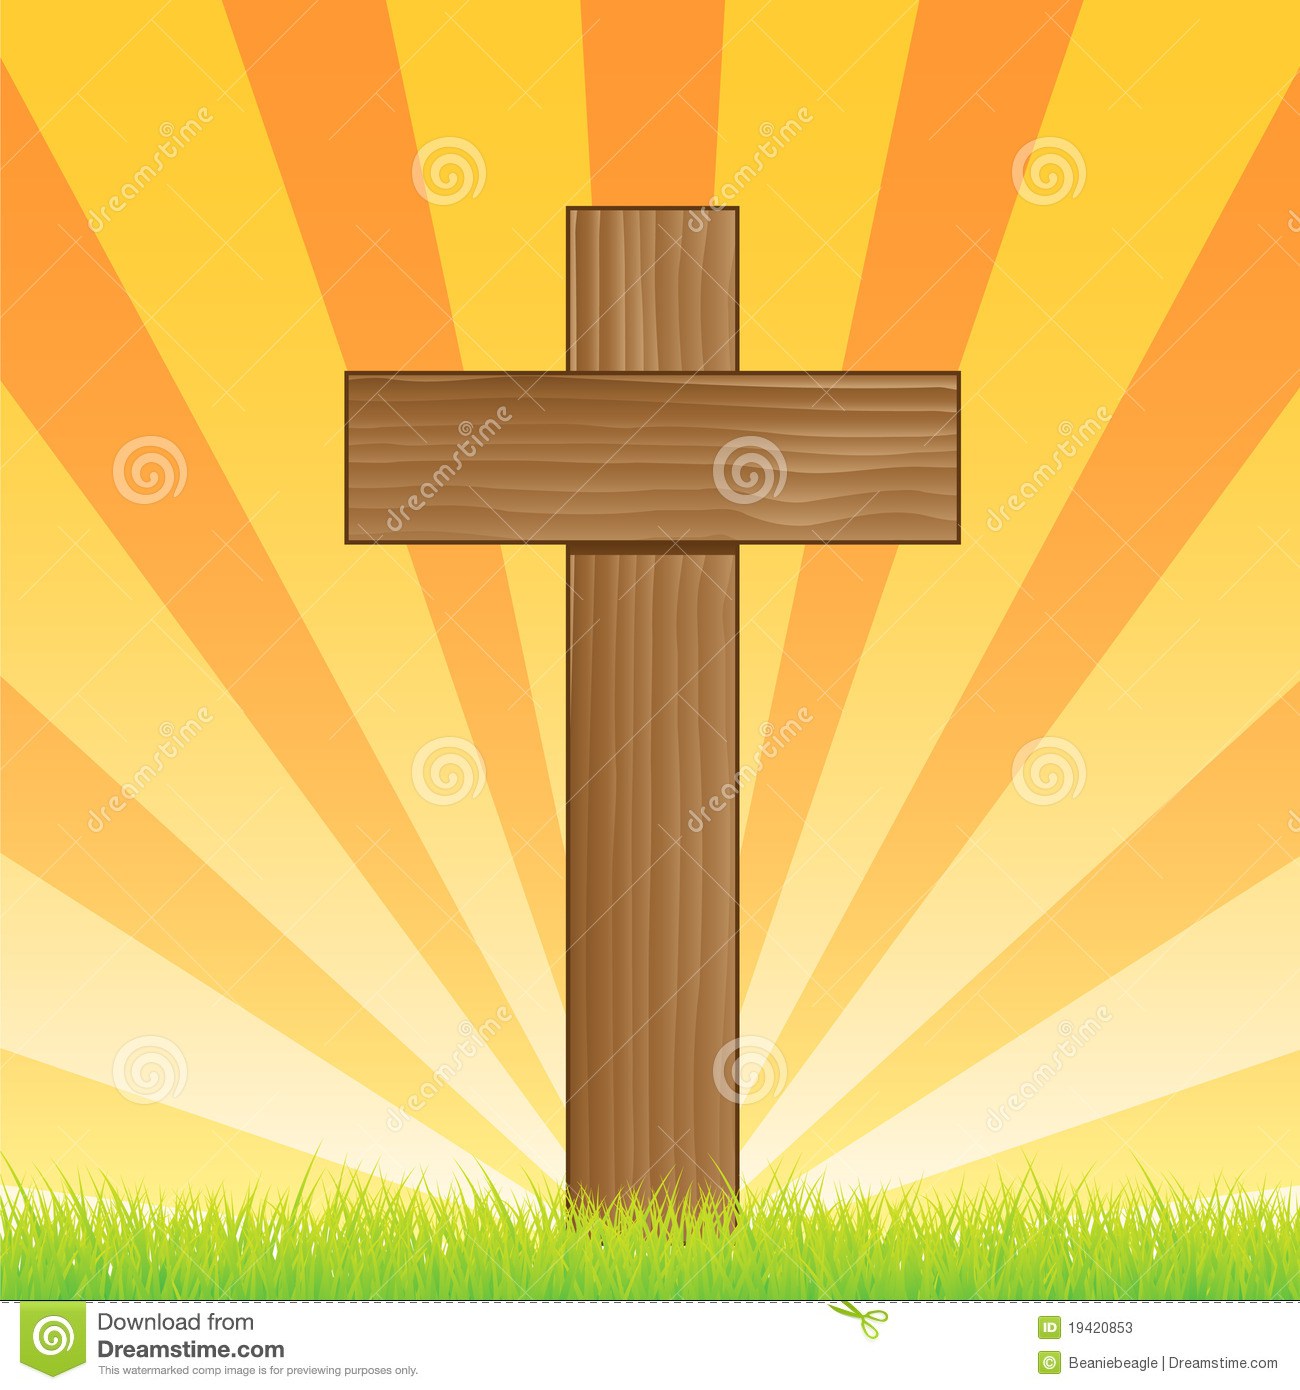 Social Science Clip Art Sunrise Easter Cross Free Christian Cross Free    